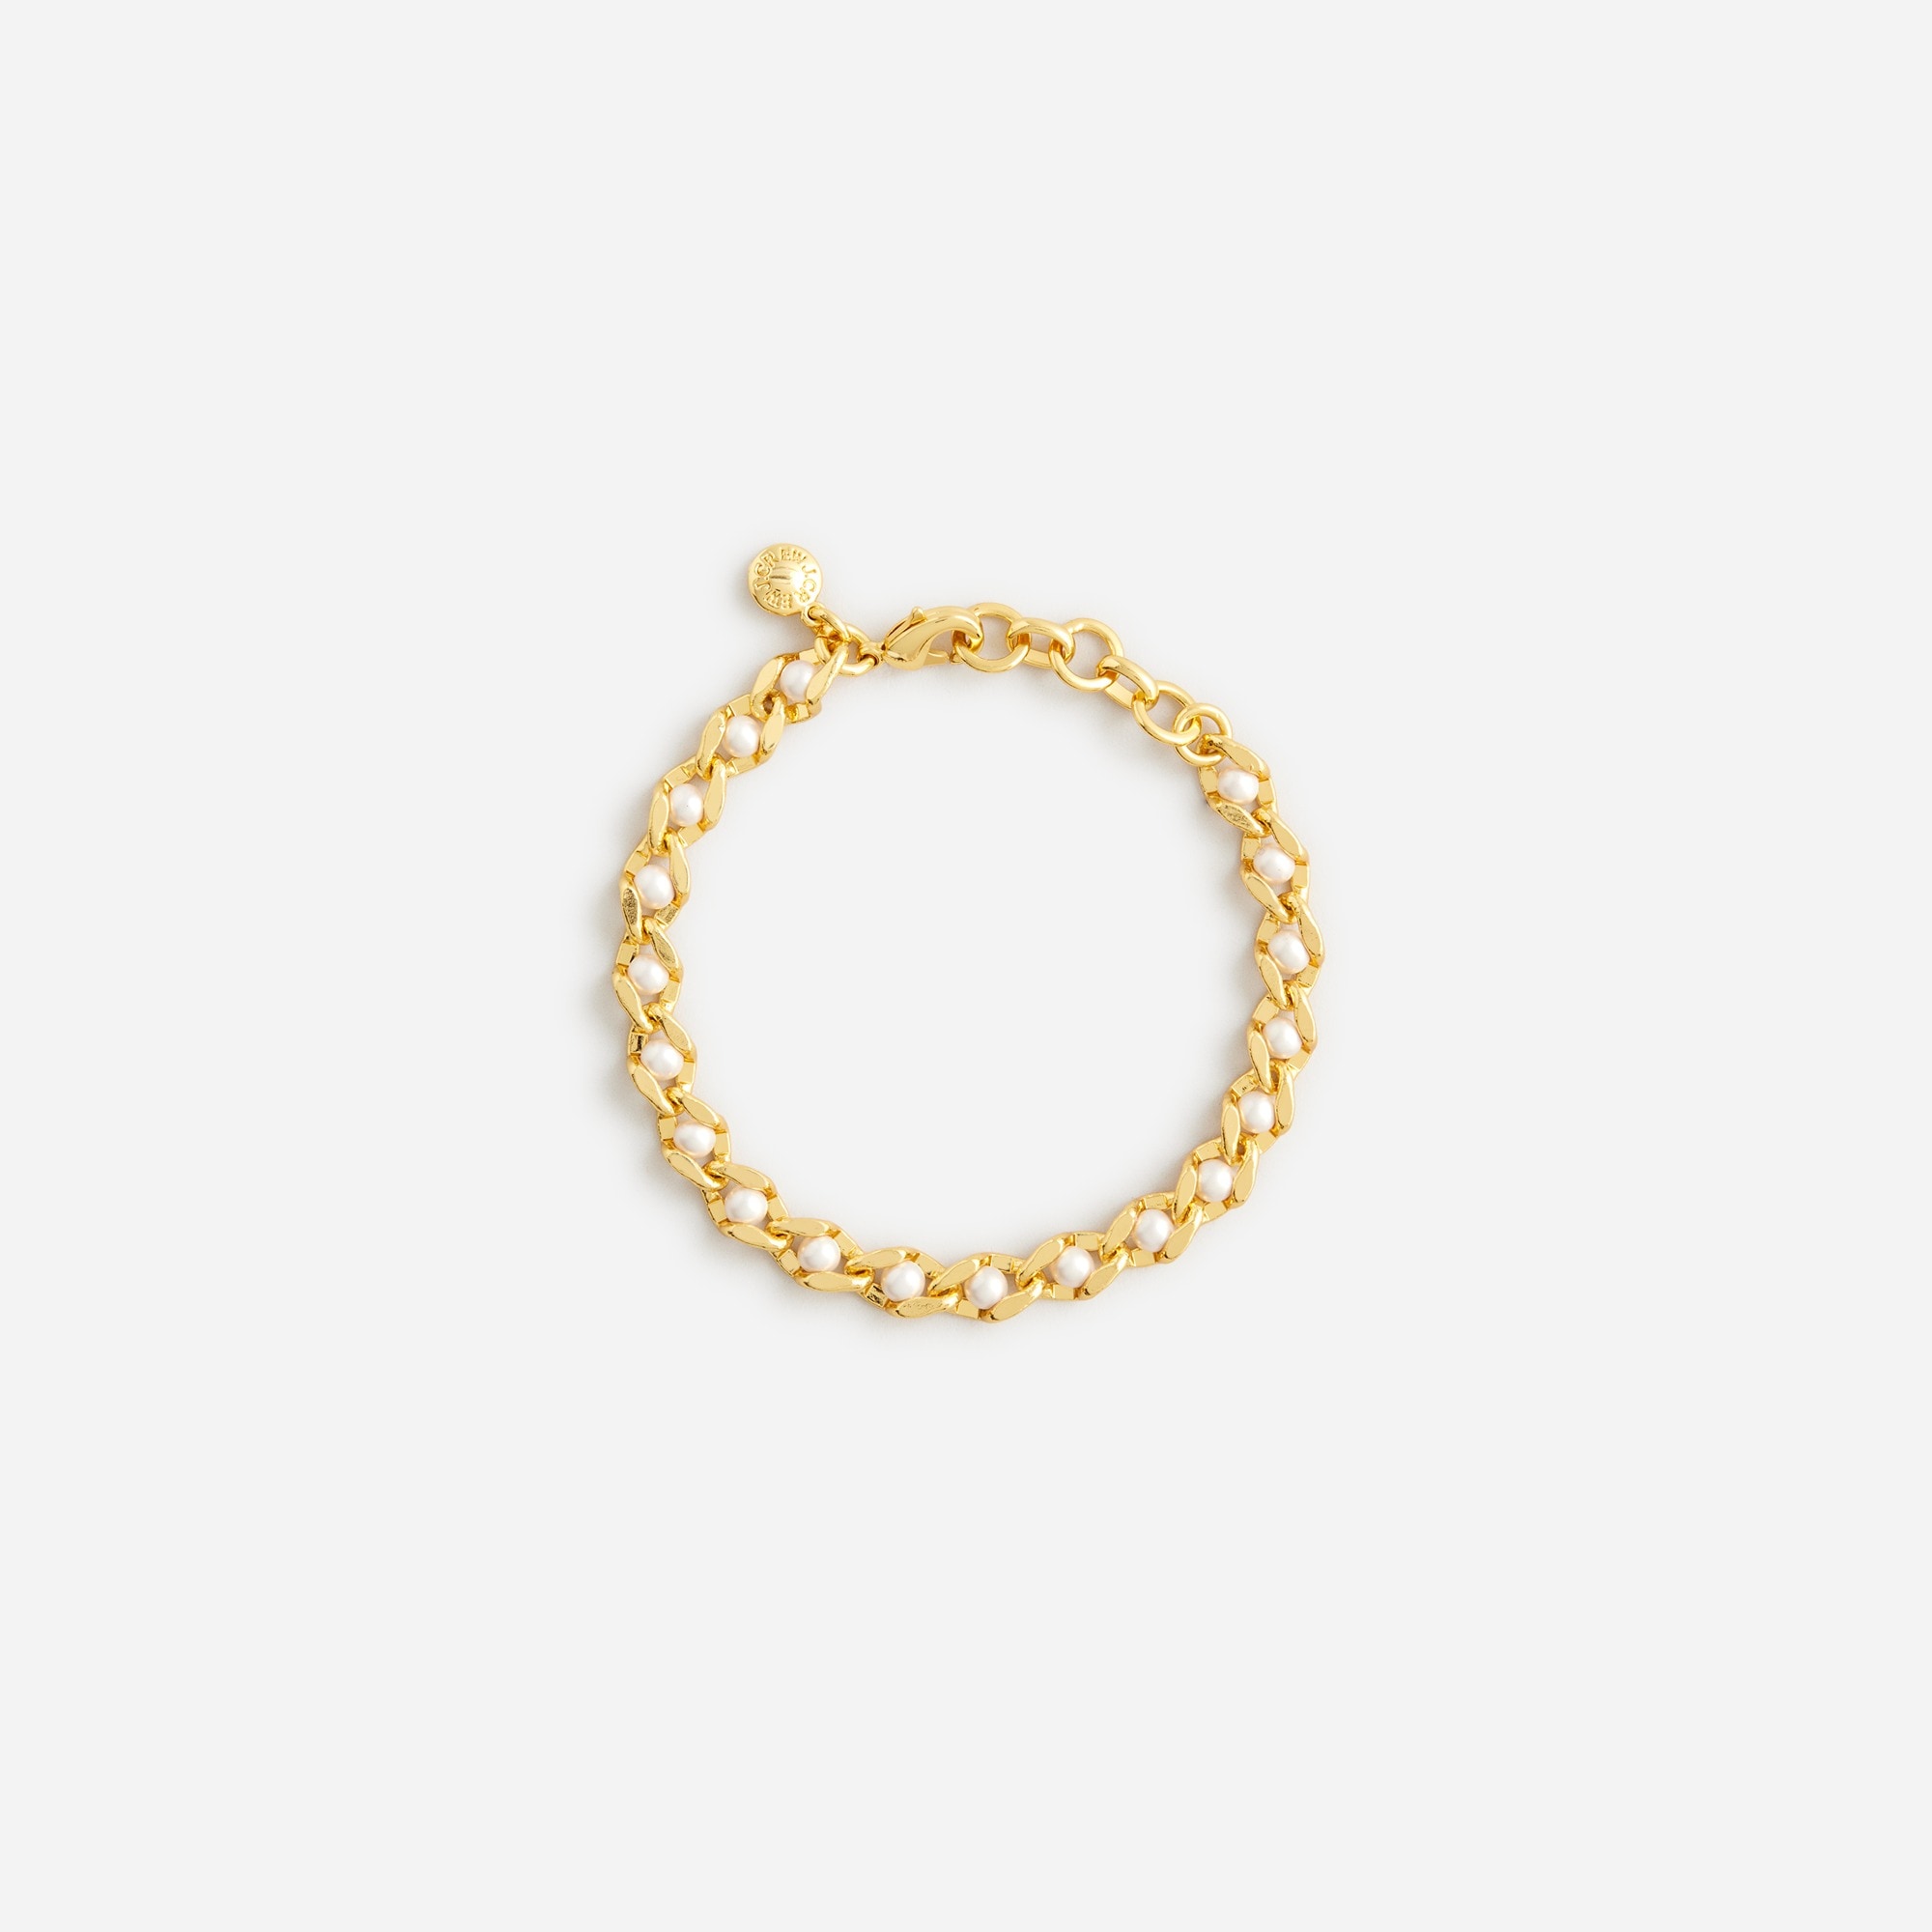  Pearl chain bracelet